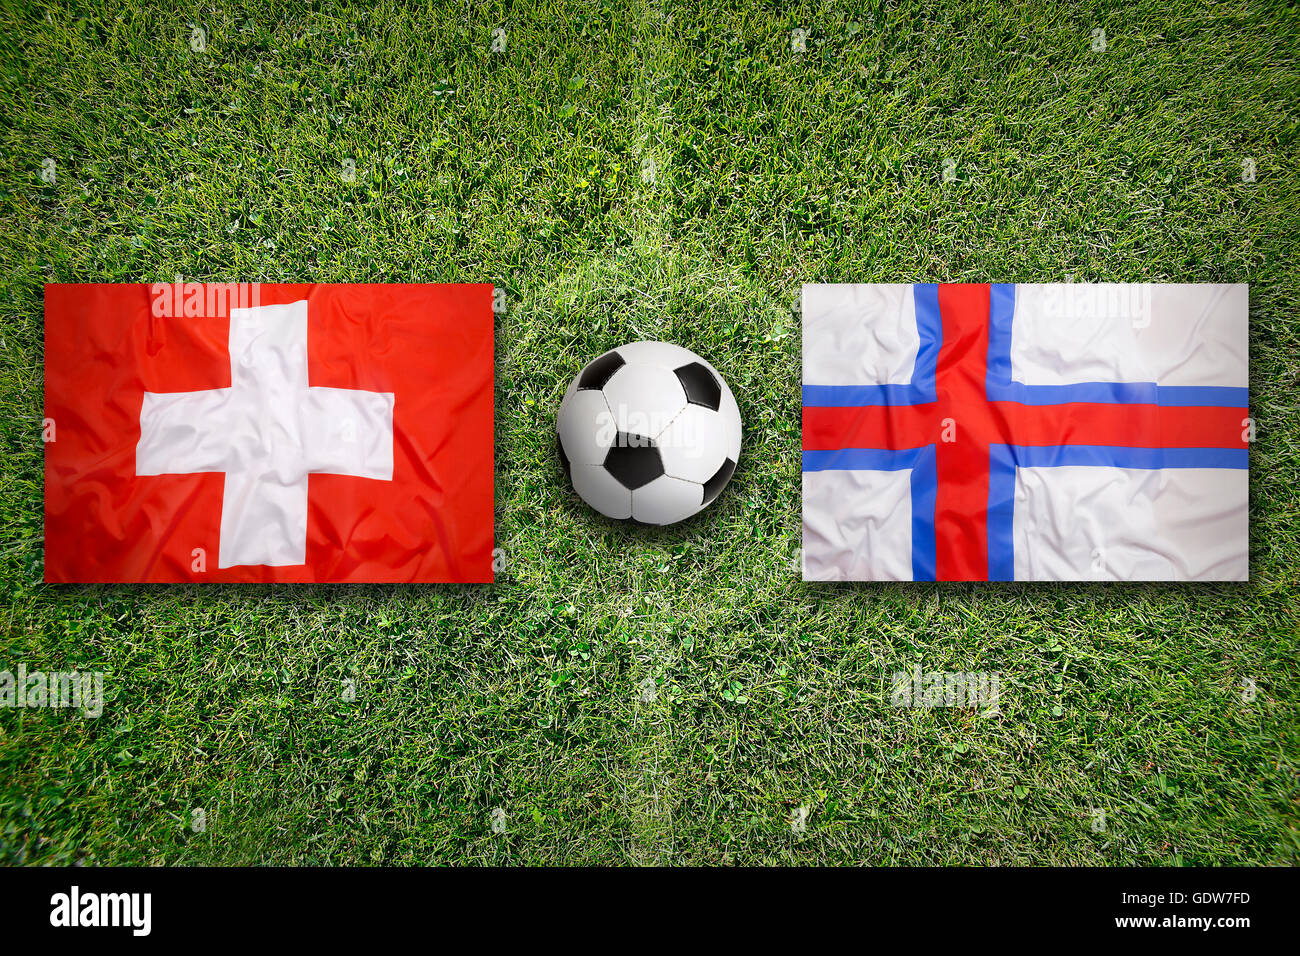 Switzerland vs. Faeroe Islands flags on green soccer field Stock Photo